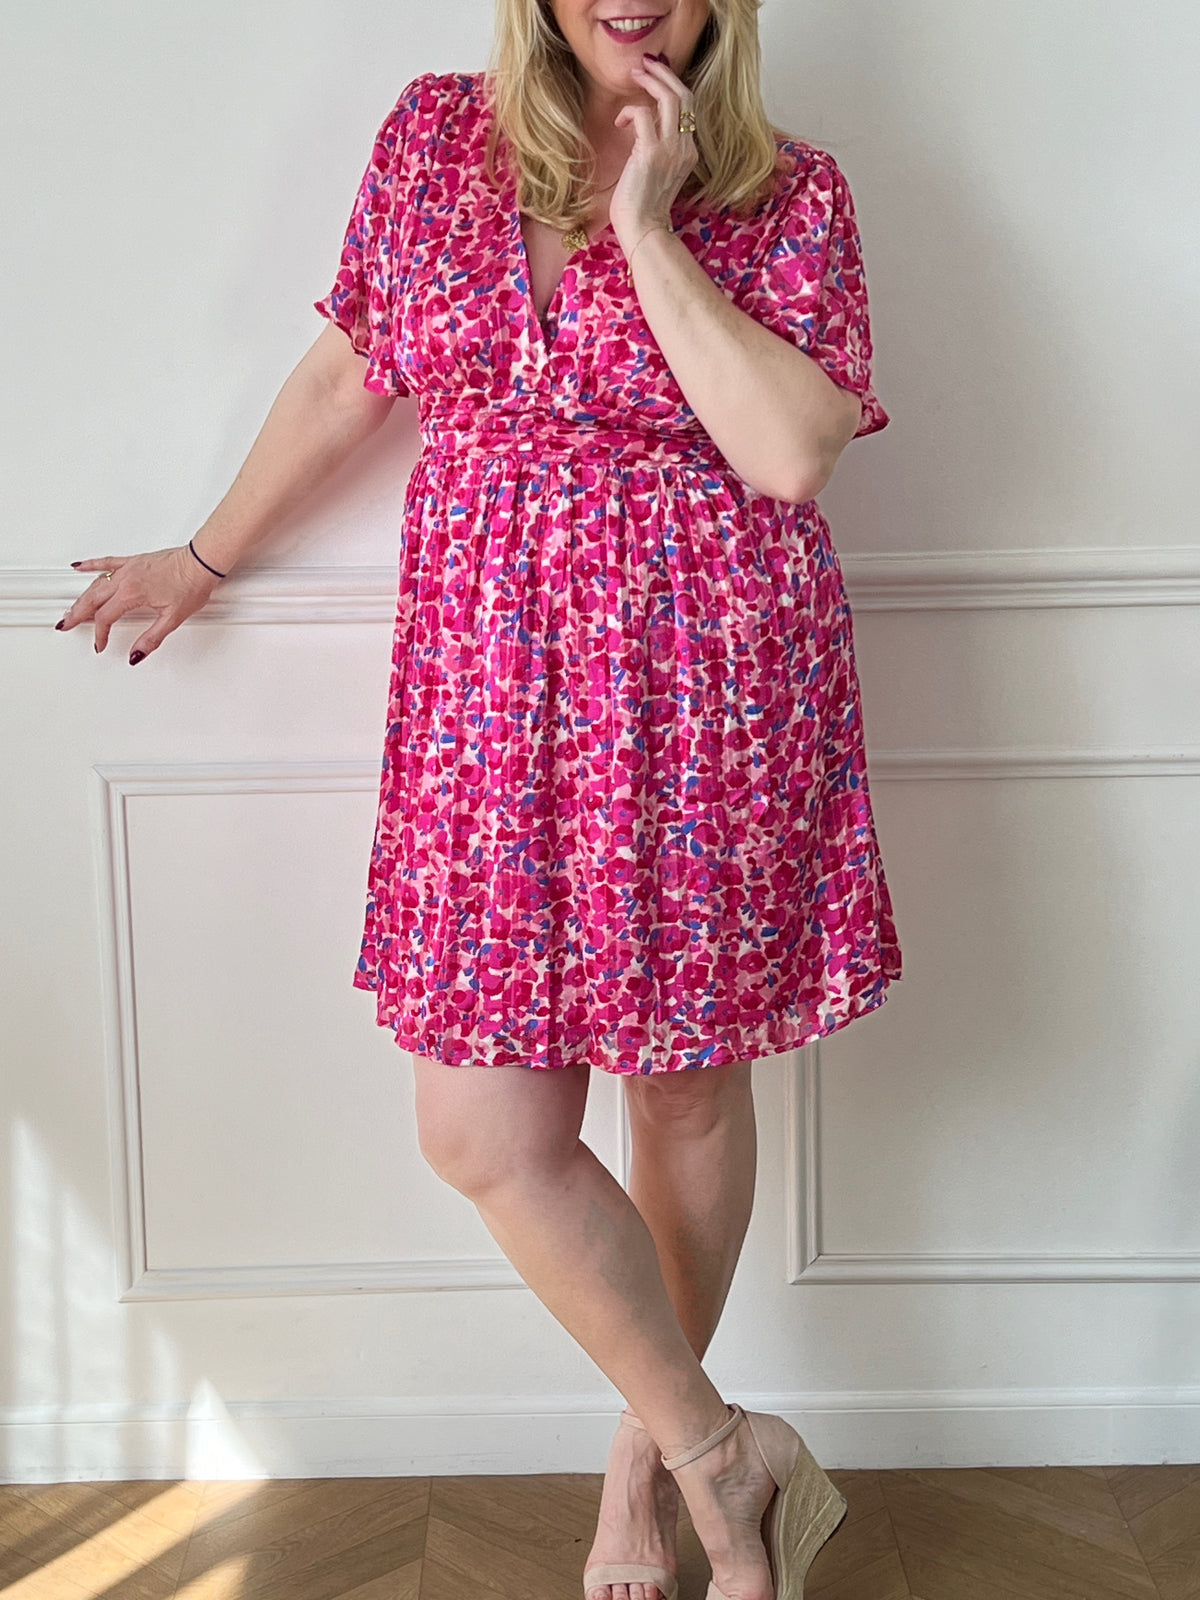 Découvrez notre robe courte rose à motifs Curve: Heidi. Avec une taille élastique au dos, cette robe vous offrira un confort ultime tout en étant élégante. Soyez tendance avec cette robe parfaite pour toutes occasions.